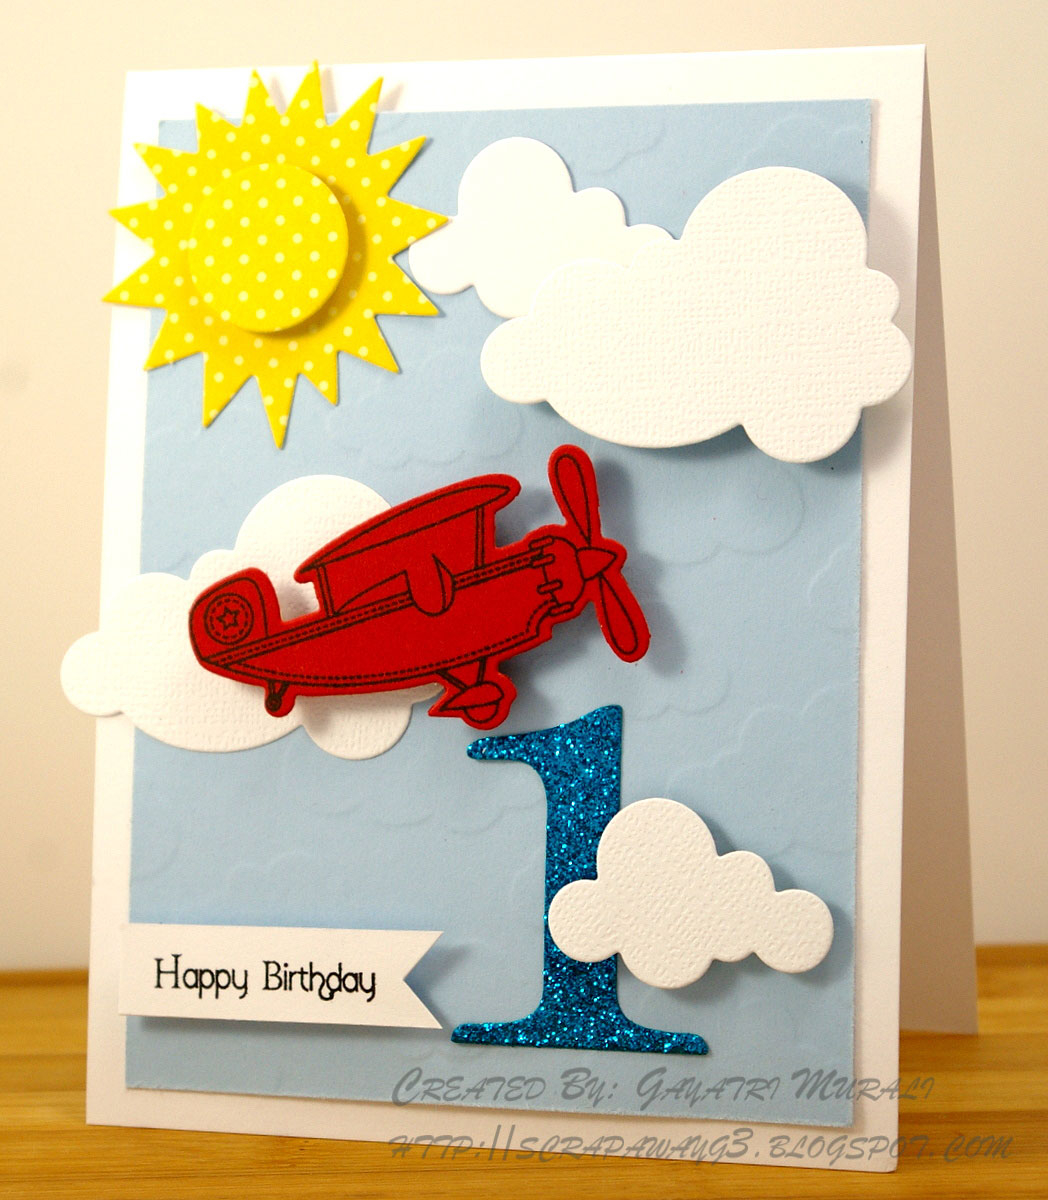 Birthday Card Ideas For Boys Handmade G3 Birthday Card